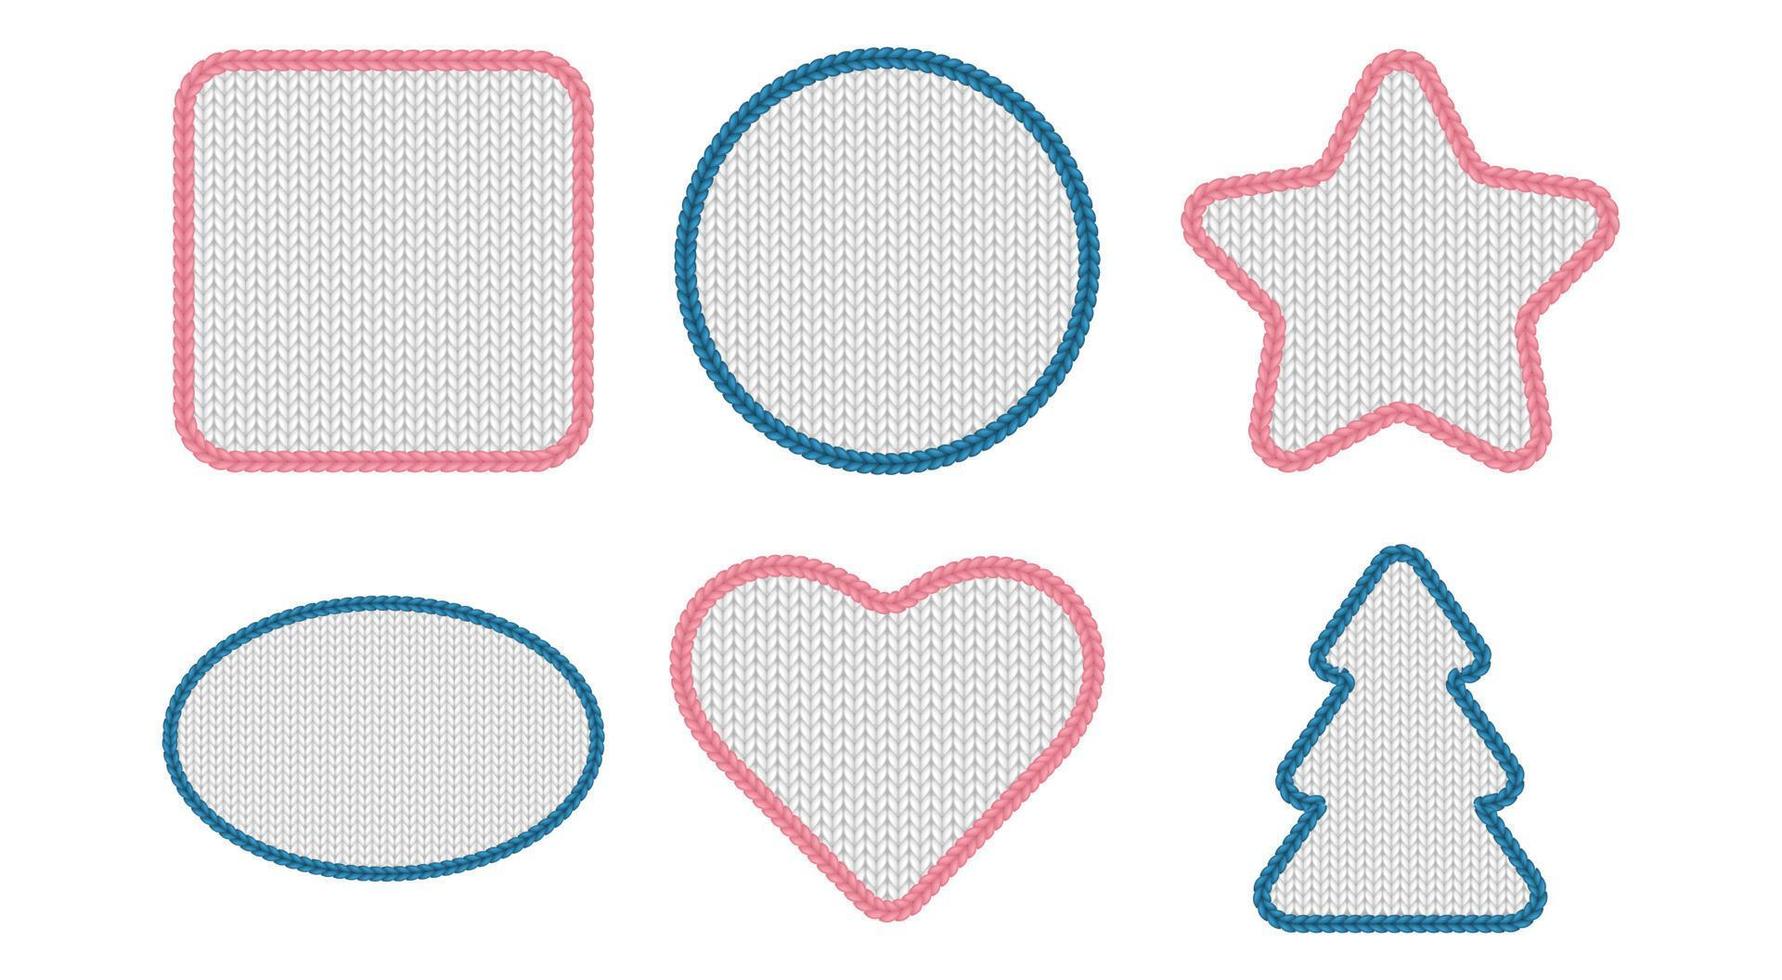 blauw roze meetkundig patches of kaders voor uitverkoop banners of sociaal media na. vierkant, ster en hart geschenk tags ontwerp verzameling vector